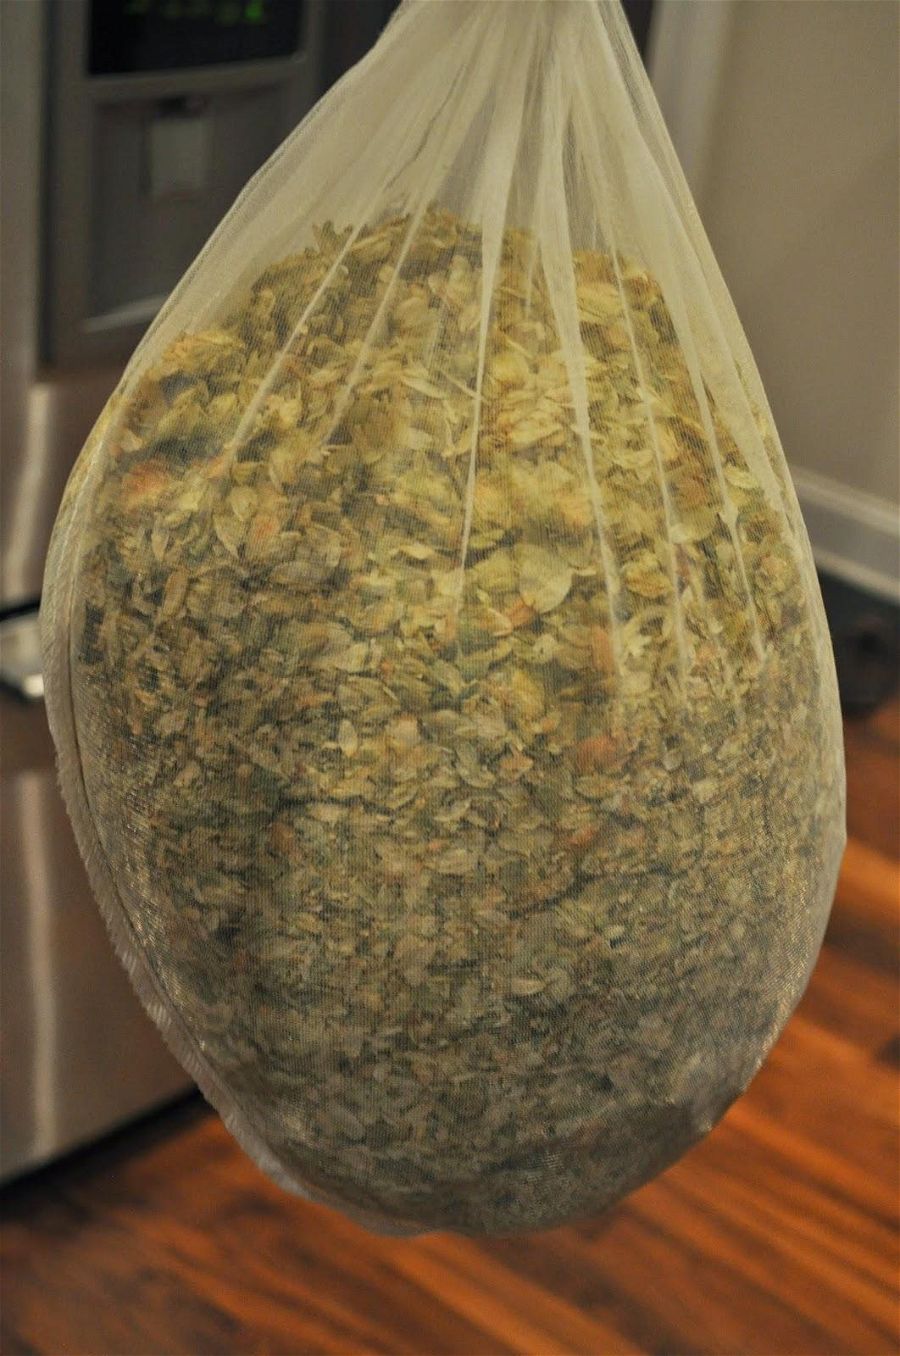 mesh bag of aged hops